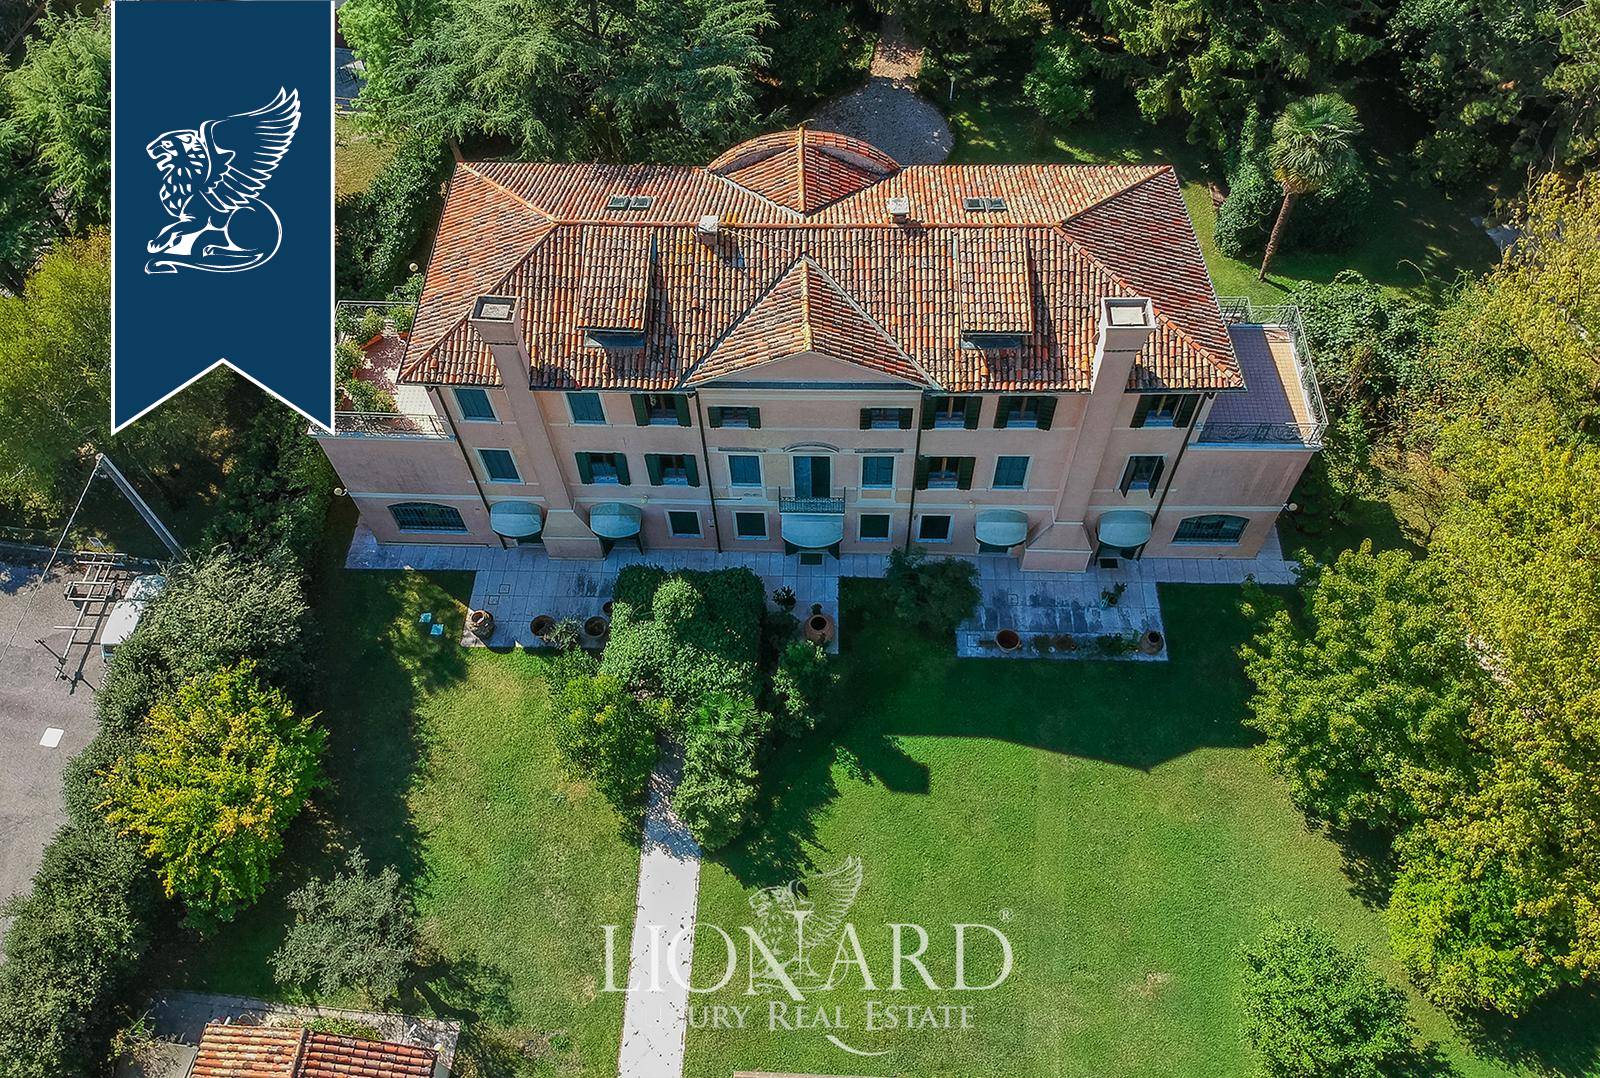 Villa in Vendita a Treviso: 0 locali, 800 mq - Foto 9